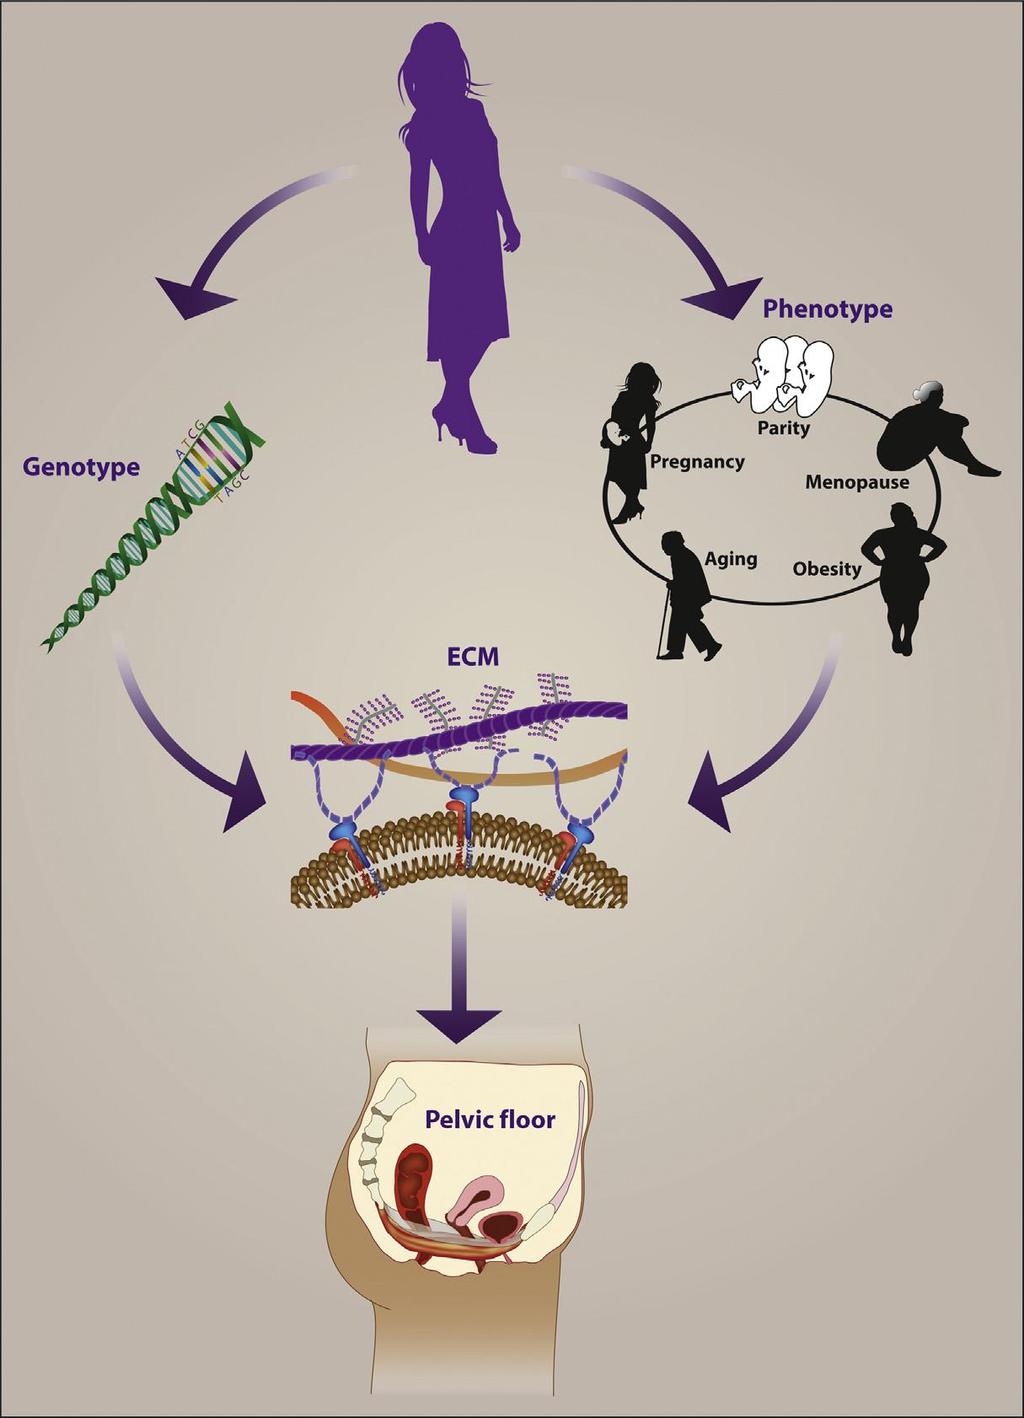 FAKTORY OVLIVŇUJÍCÍ FUNKCI SPD Schematické znázornění kombinovaných účinků genotypu a fenotypu faktorů, které mohou mít vliv na ECM (extracellular matrix) složení, strukturu podpůrné funkce svalů